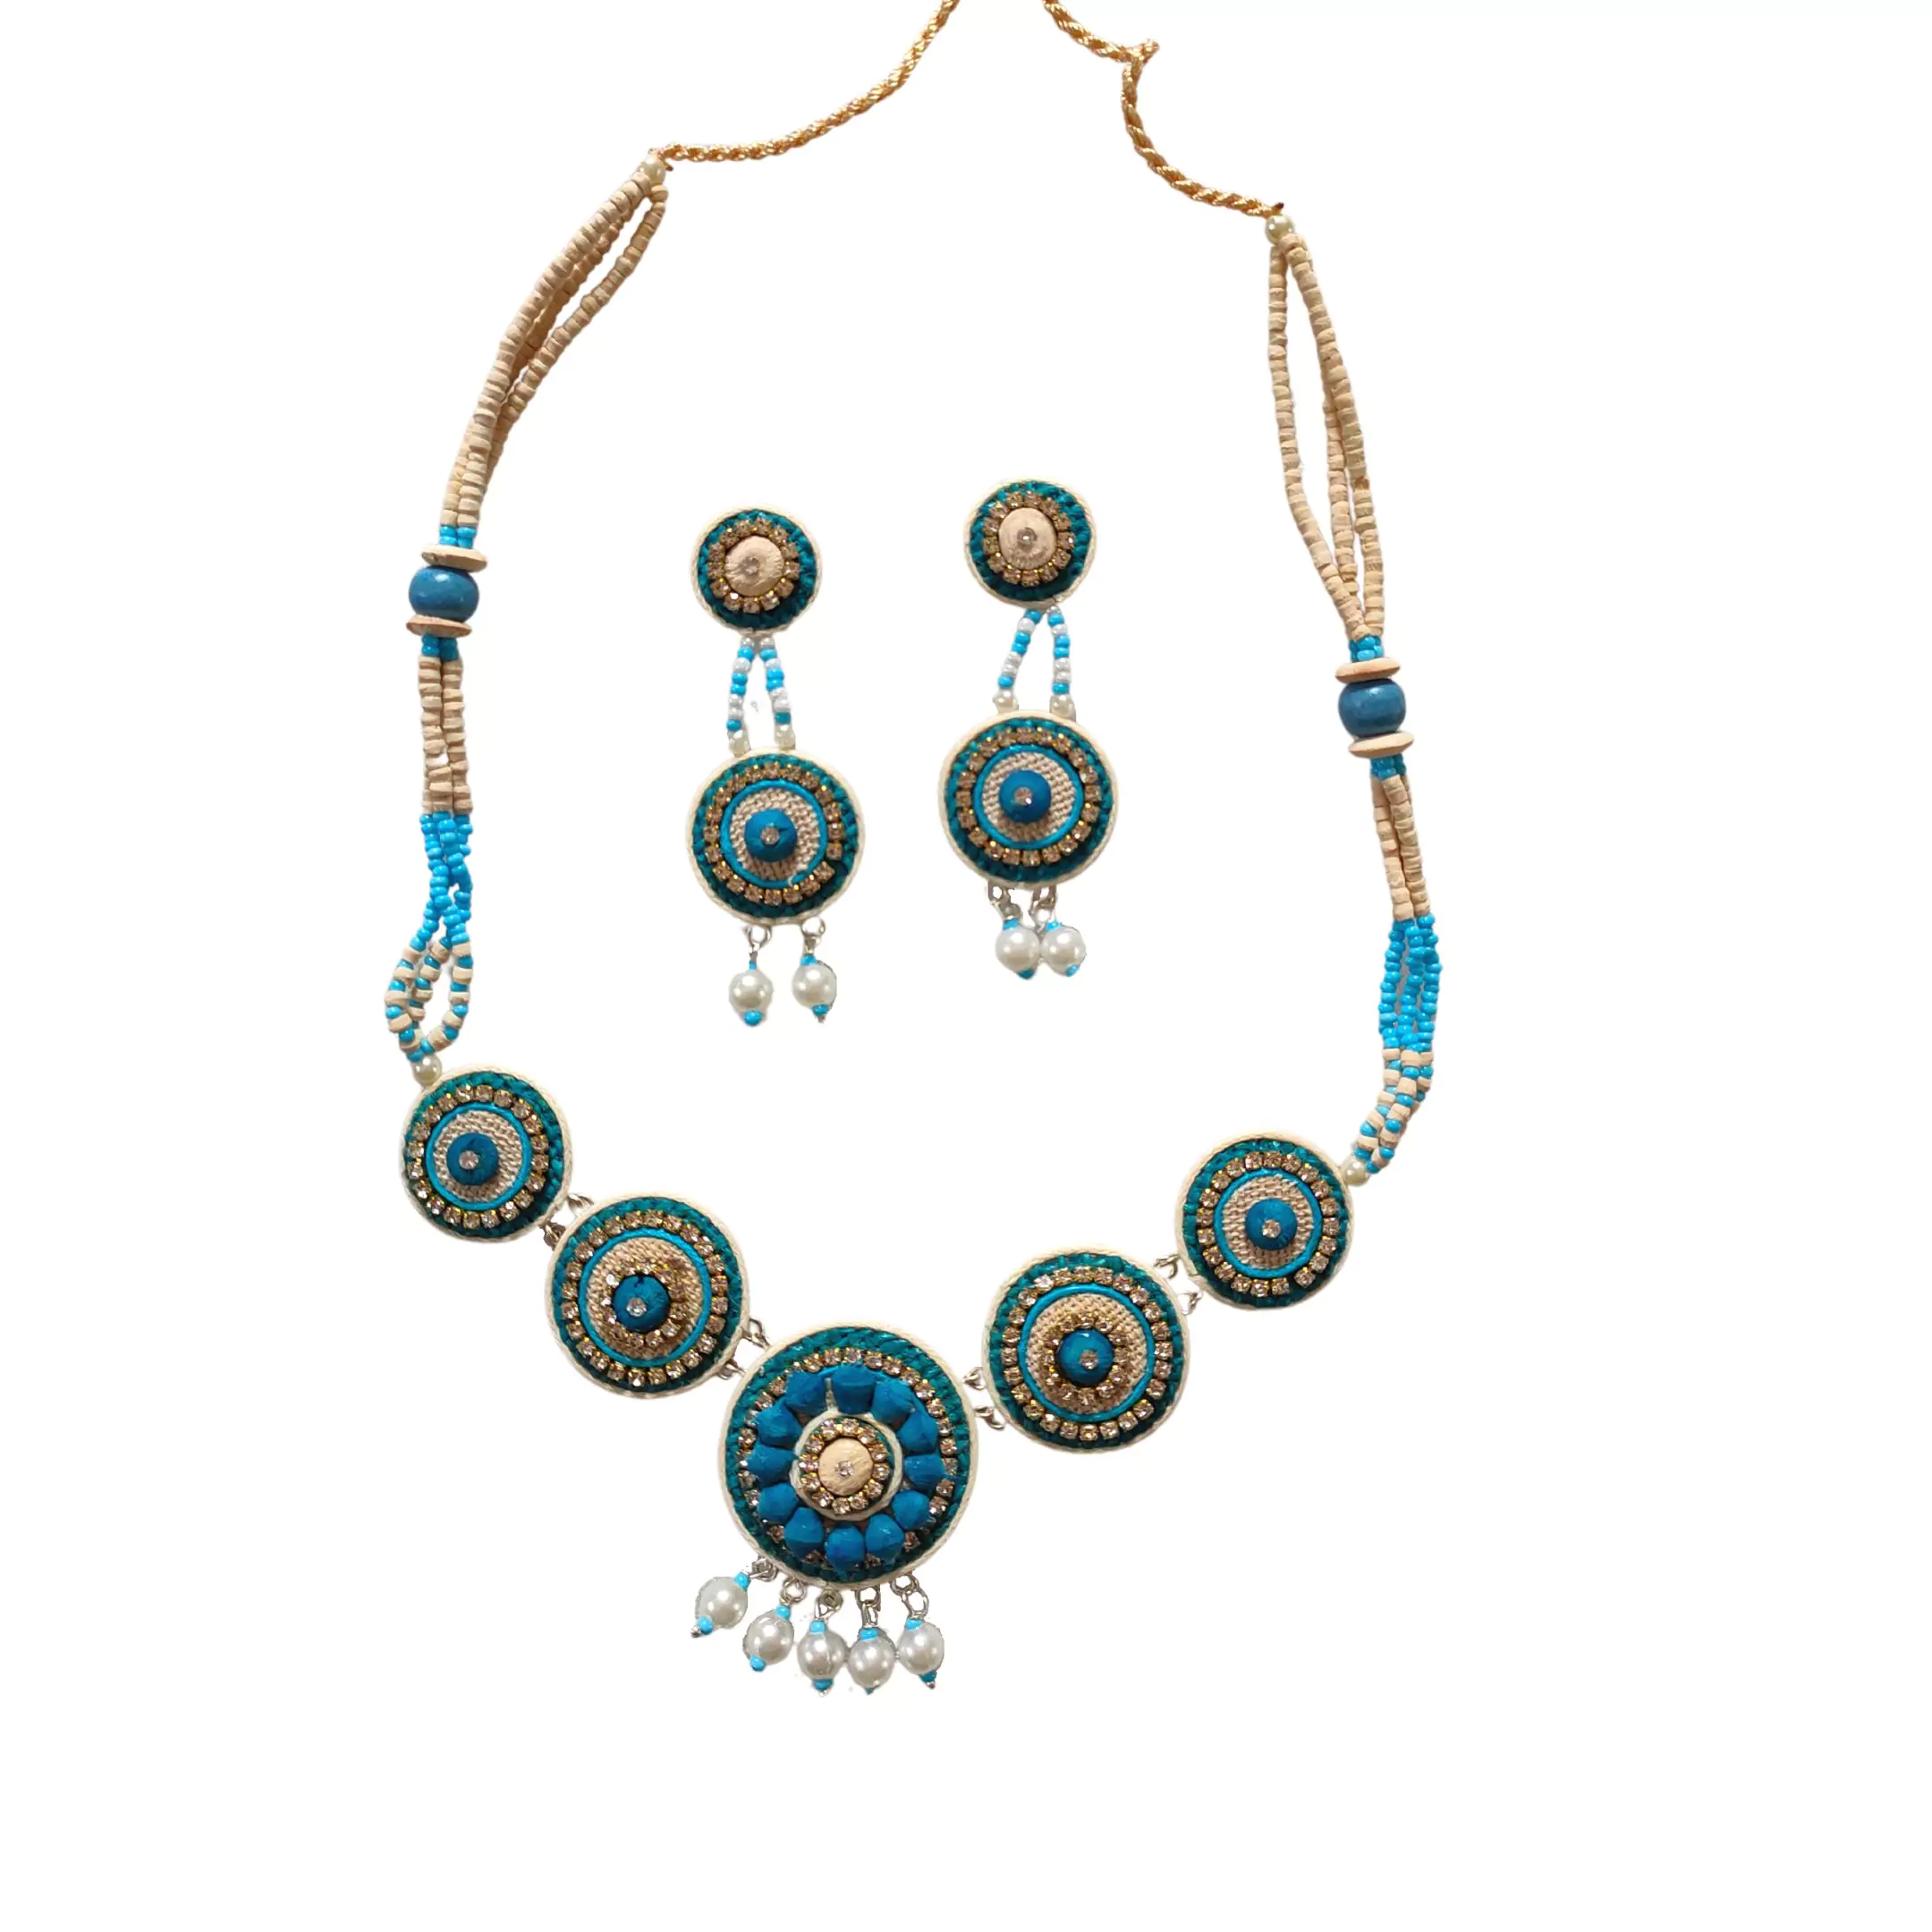 Buy Indian handicrafts and handmade jewellery online